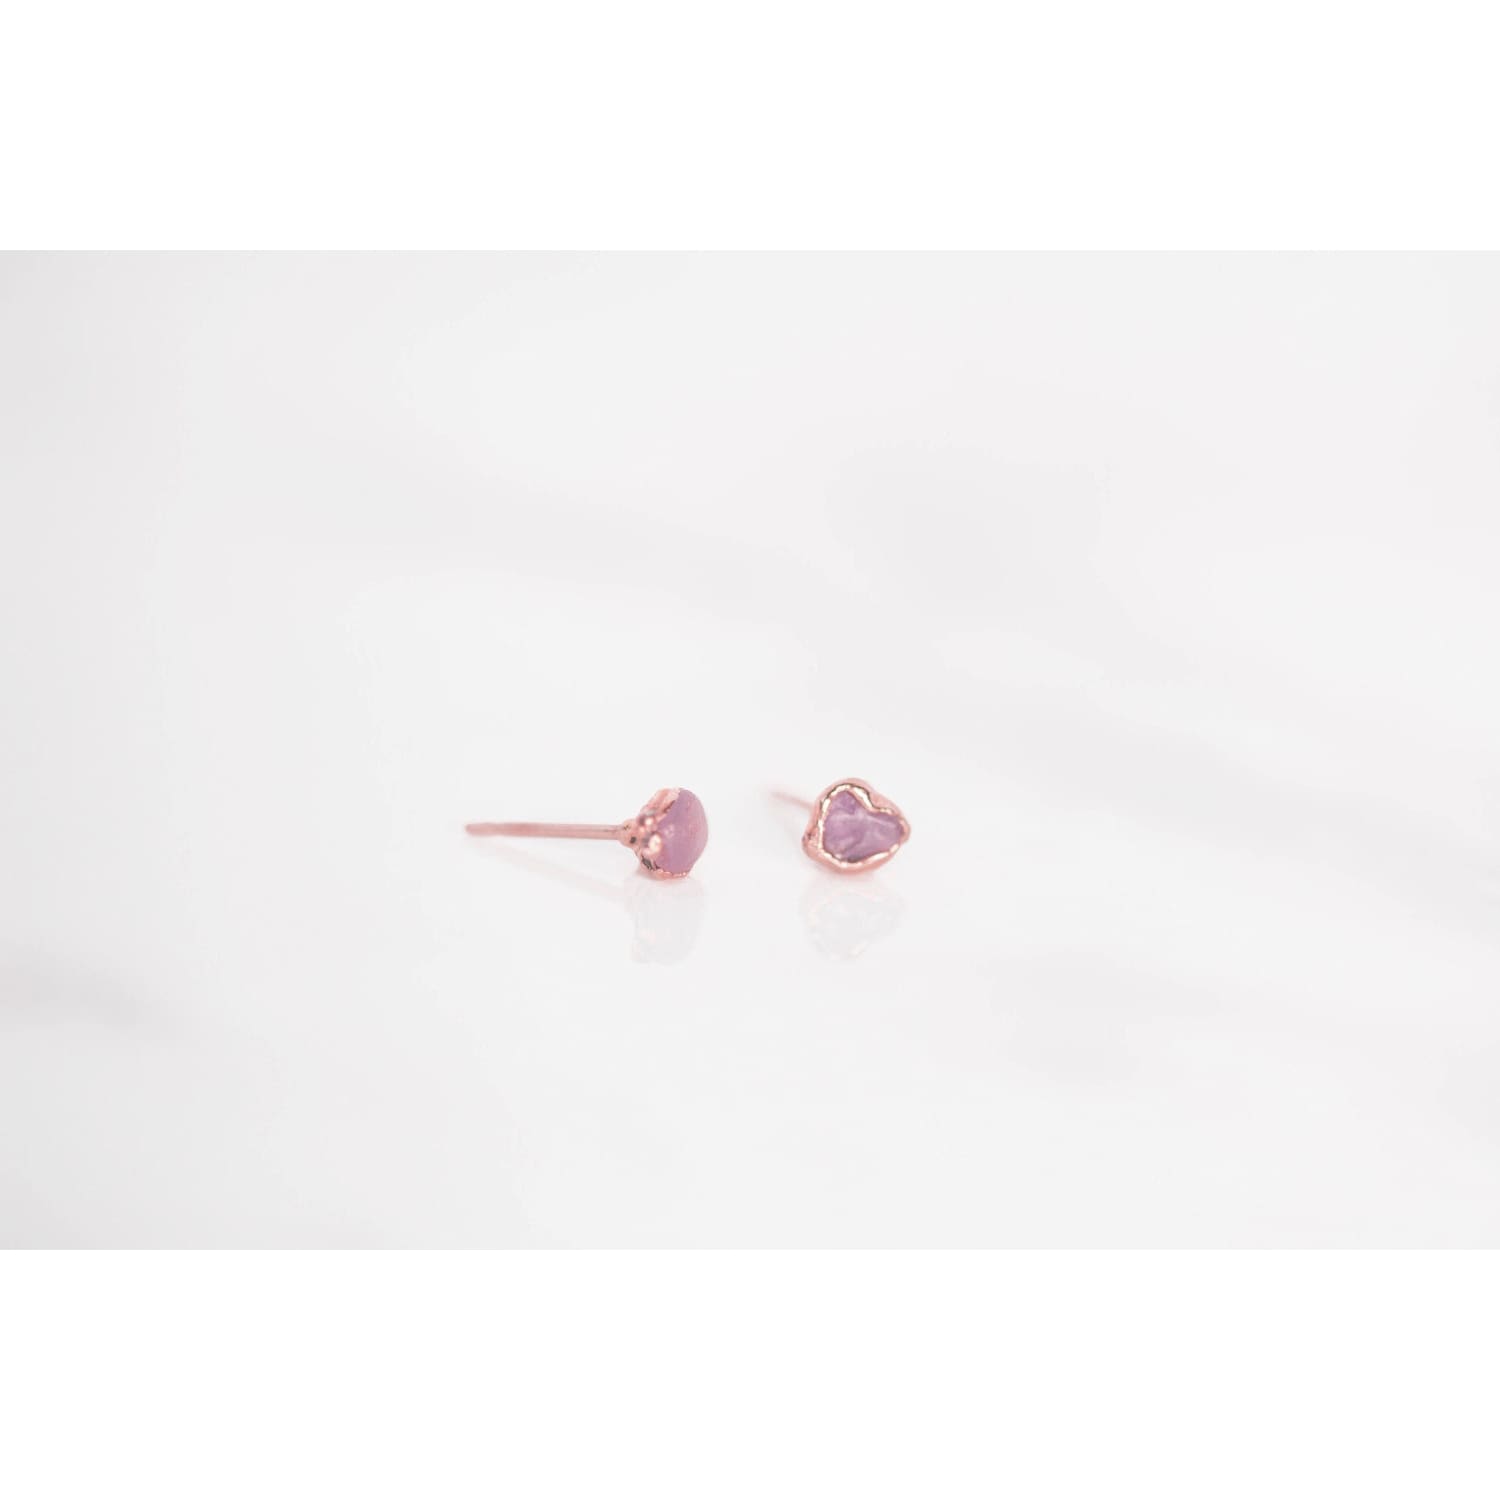 Dainty Raw Ruby Stud Earrings in Rose Gold Gemstone Jewelry